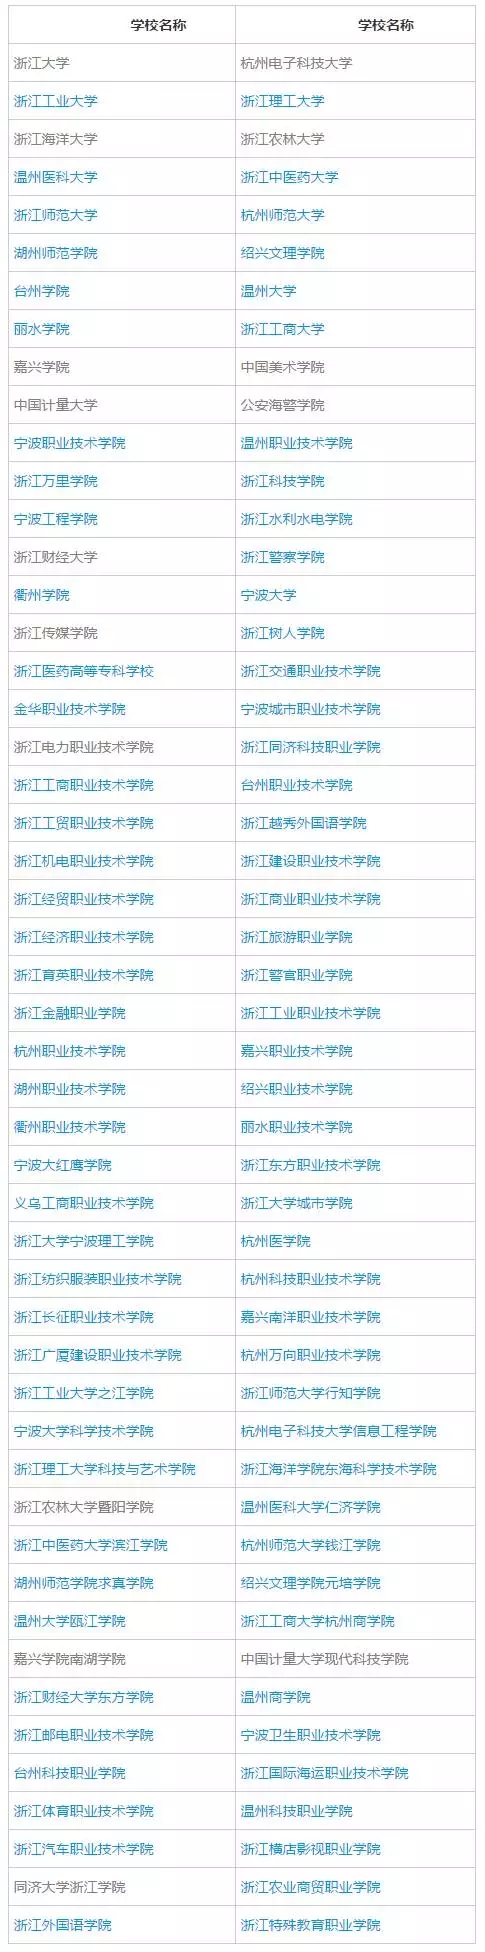 已有42所浙江本科高校公布2017年招生章程